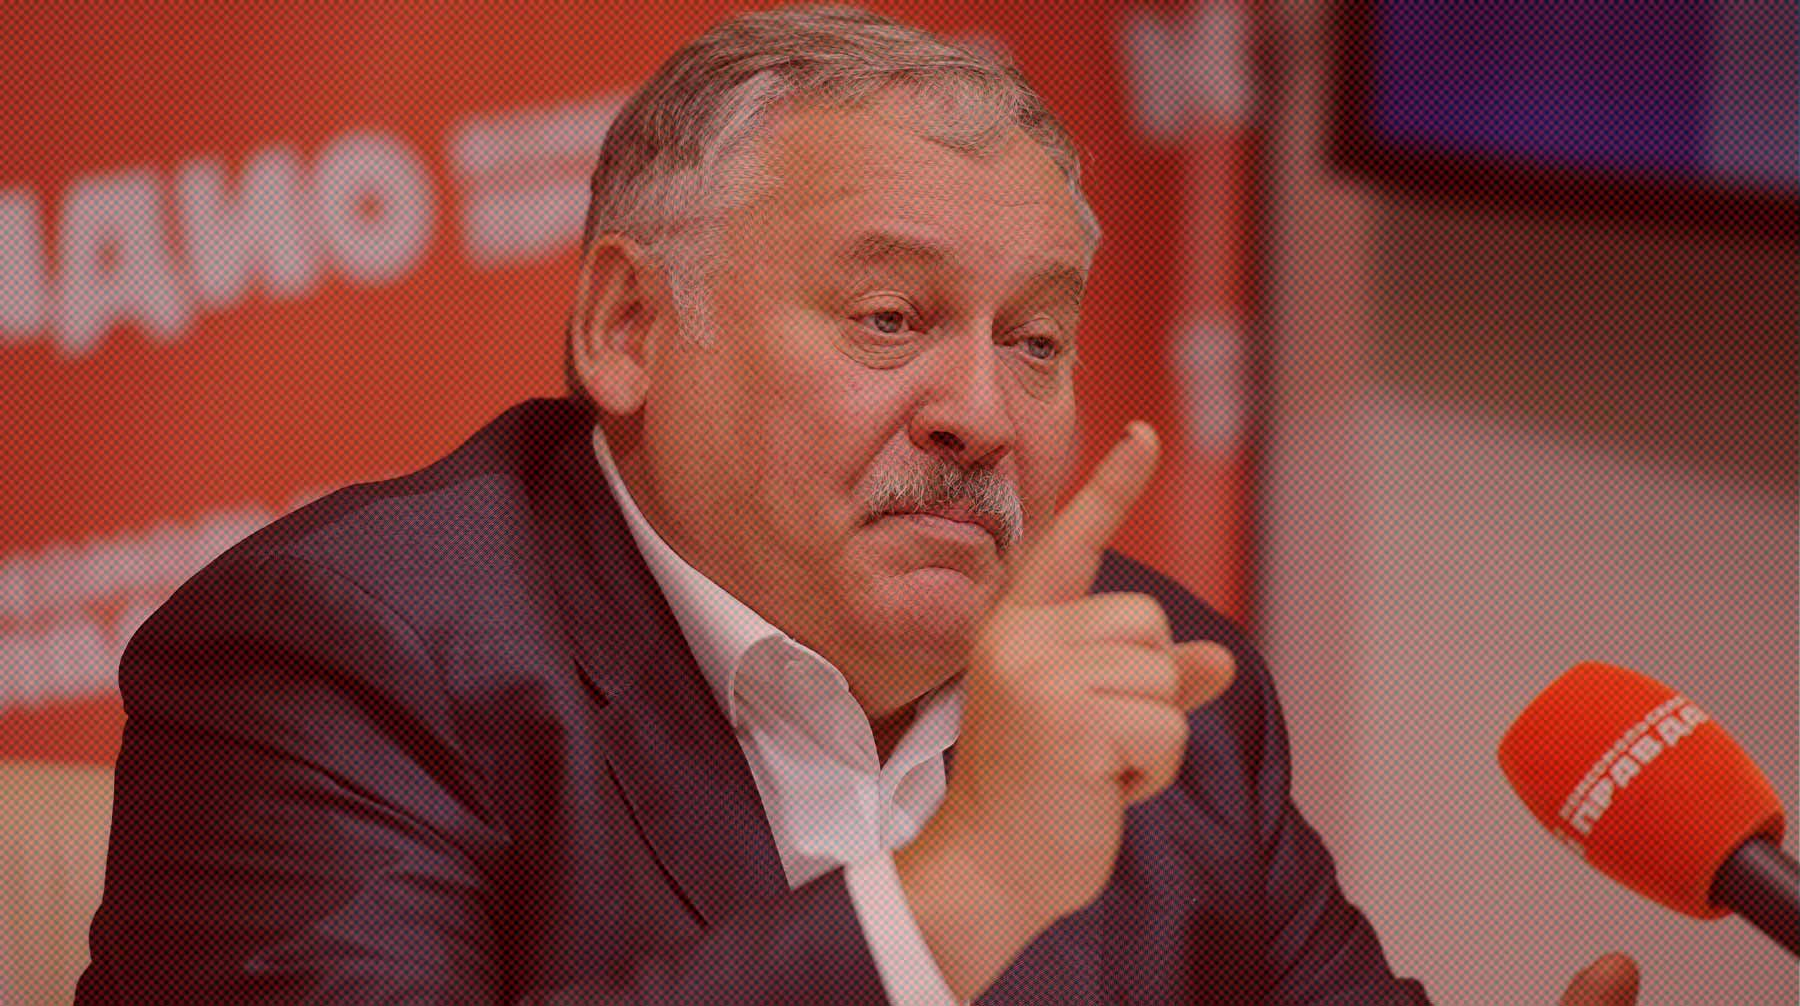 Депутат Госдумы Затулин рассказал, что встречался с руководством фракции единороссов по поводу своей возможной отставки